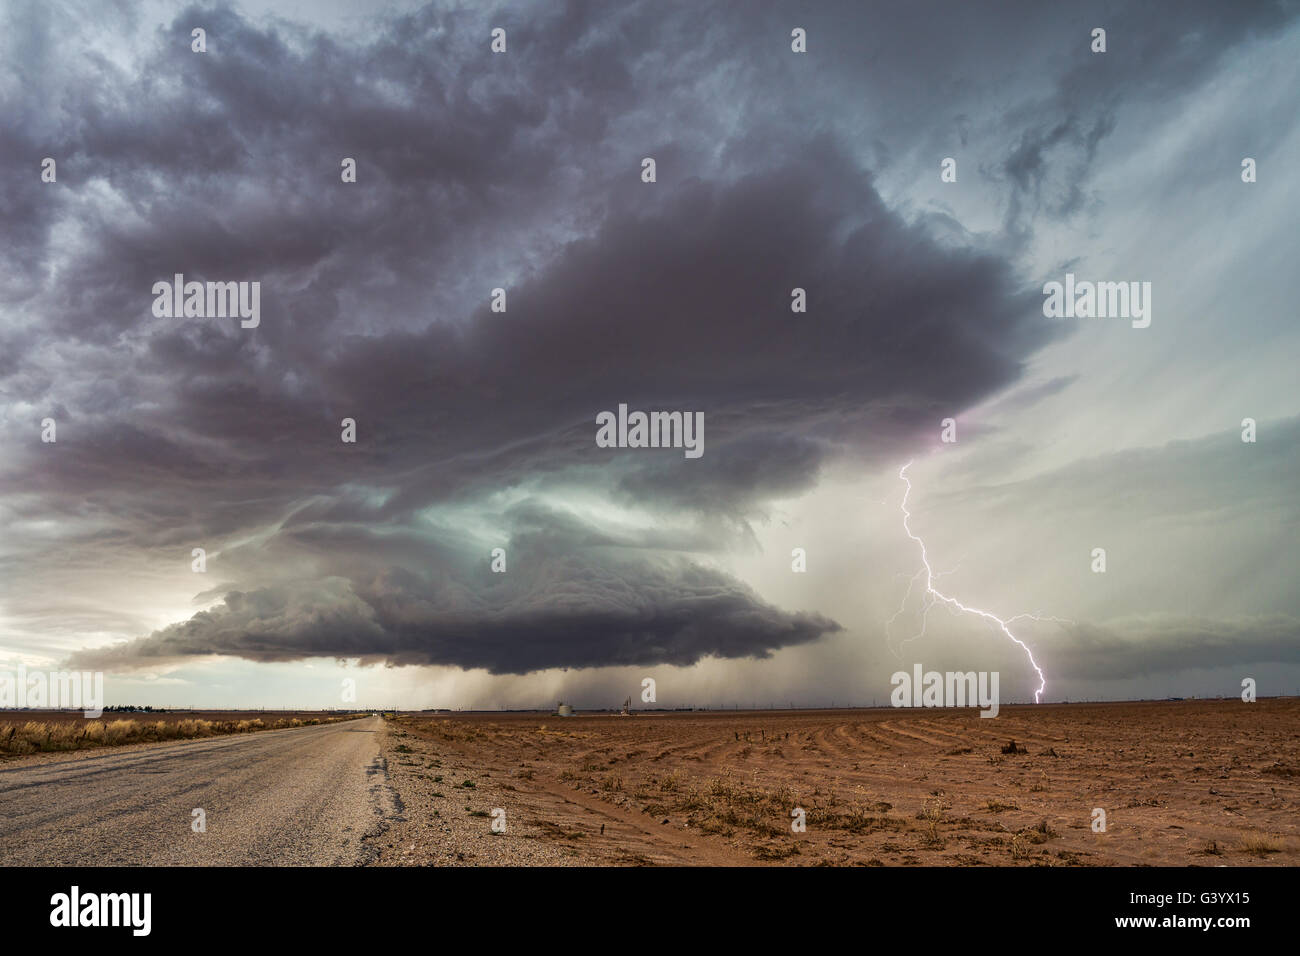 Dramatisches supercell-Gewitter mit intensiven Blitzen in der Nähe von Ackerly, Texas Stockfoto